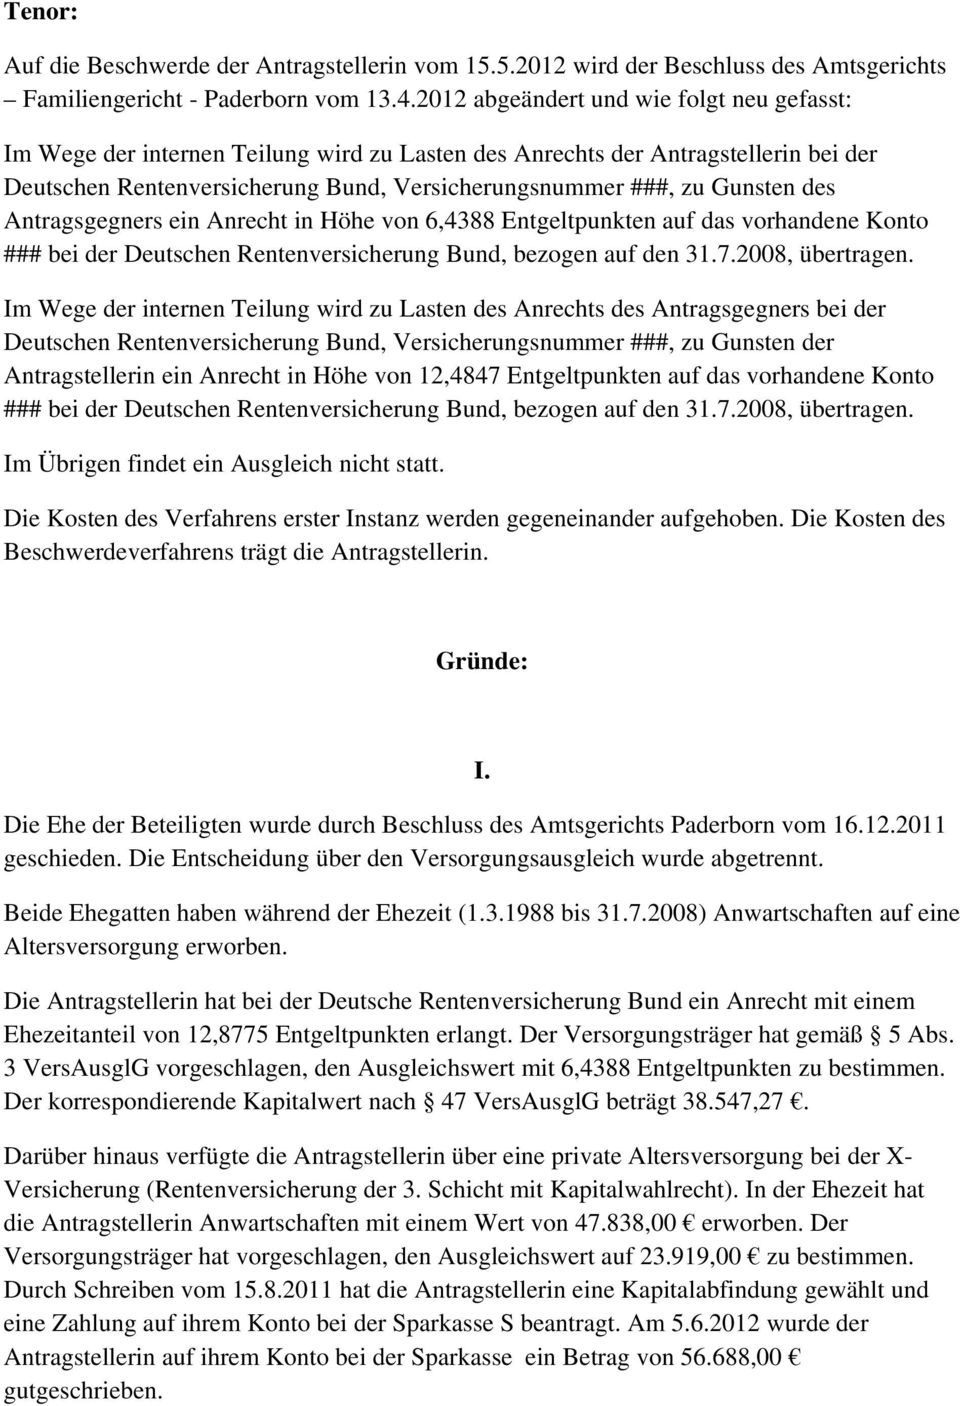 des Antragsgegners ein Anrecht in Höhe von 6,4388 Entgeltpunkten auf das vorhandene Konto ### bei der Deutschen Rentenversicherung Bund, bezogen auf den 31.7.2008, übertragen.